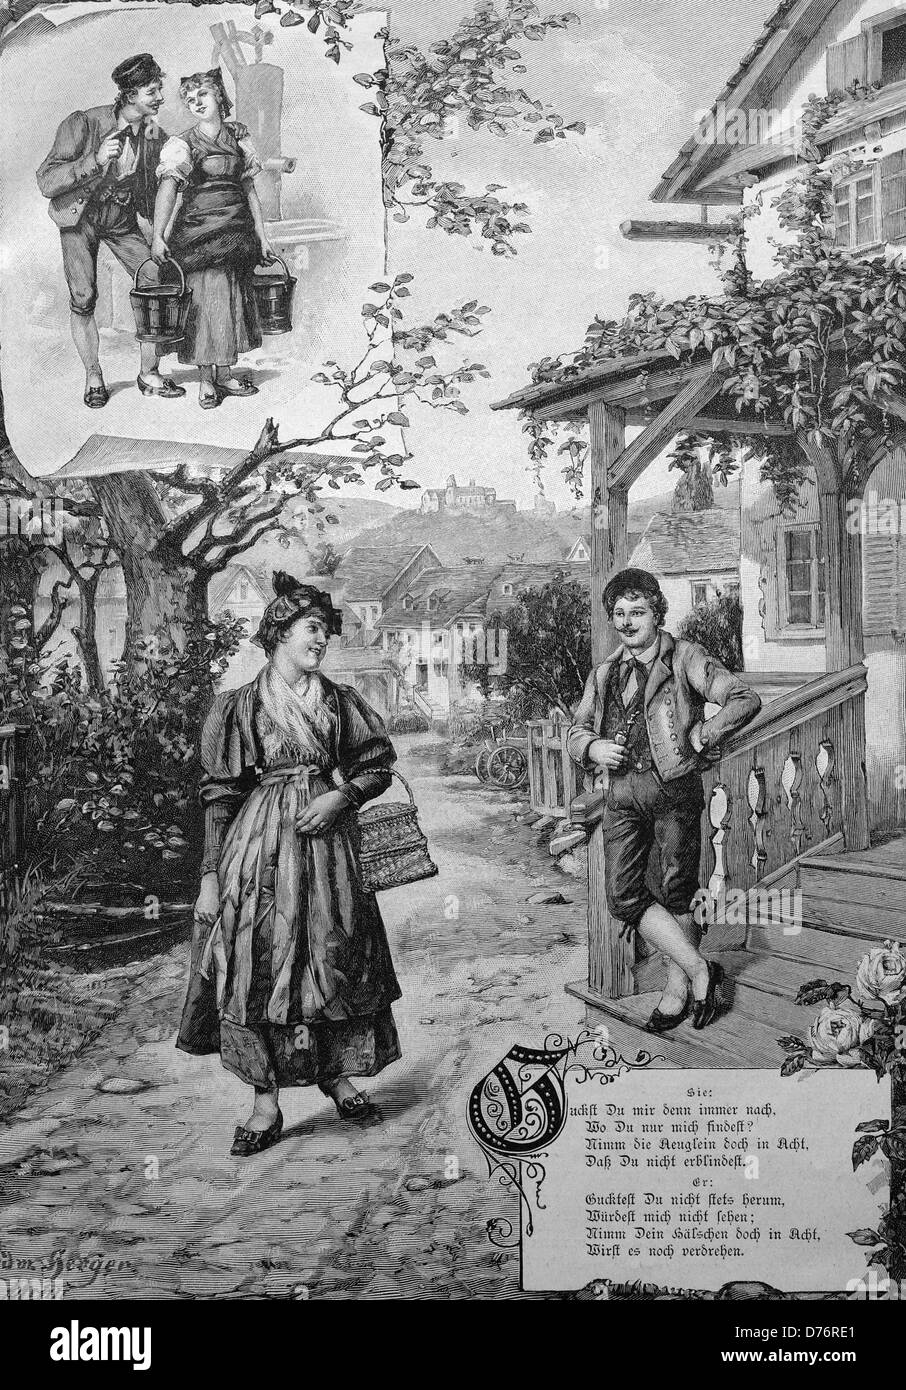 Poema de amor, de pareja alrededor de 1870, ilustración histórica Foto de stock